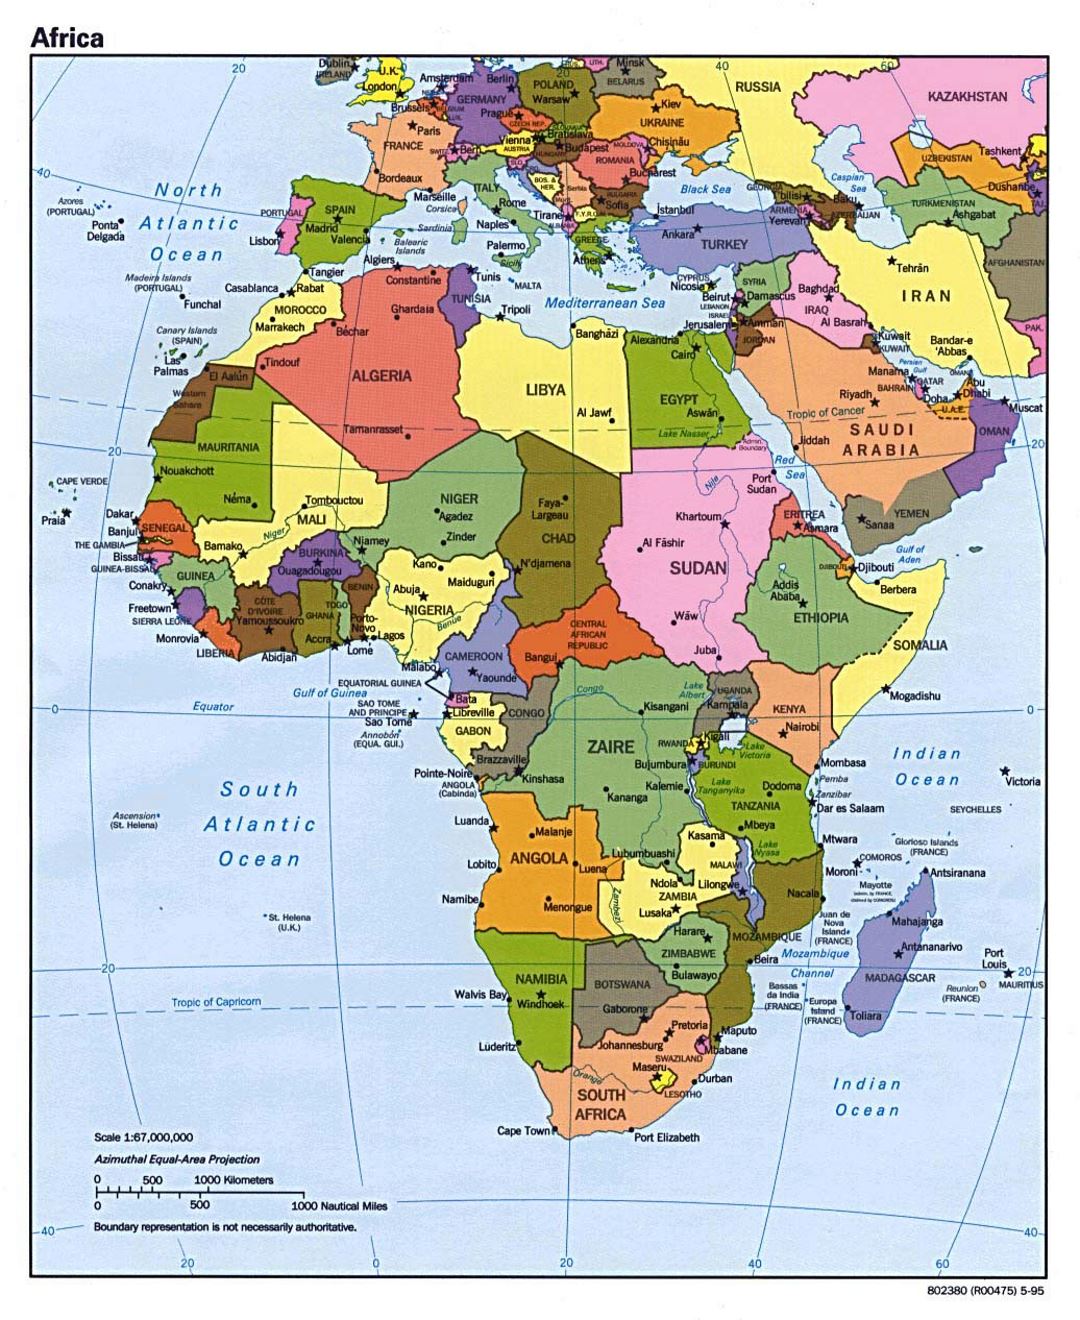 Mapa político de África con las principales ciudades y capitales - 1995